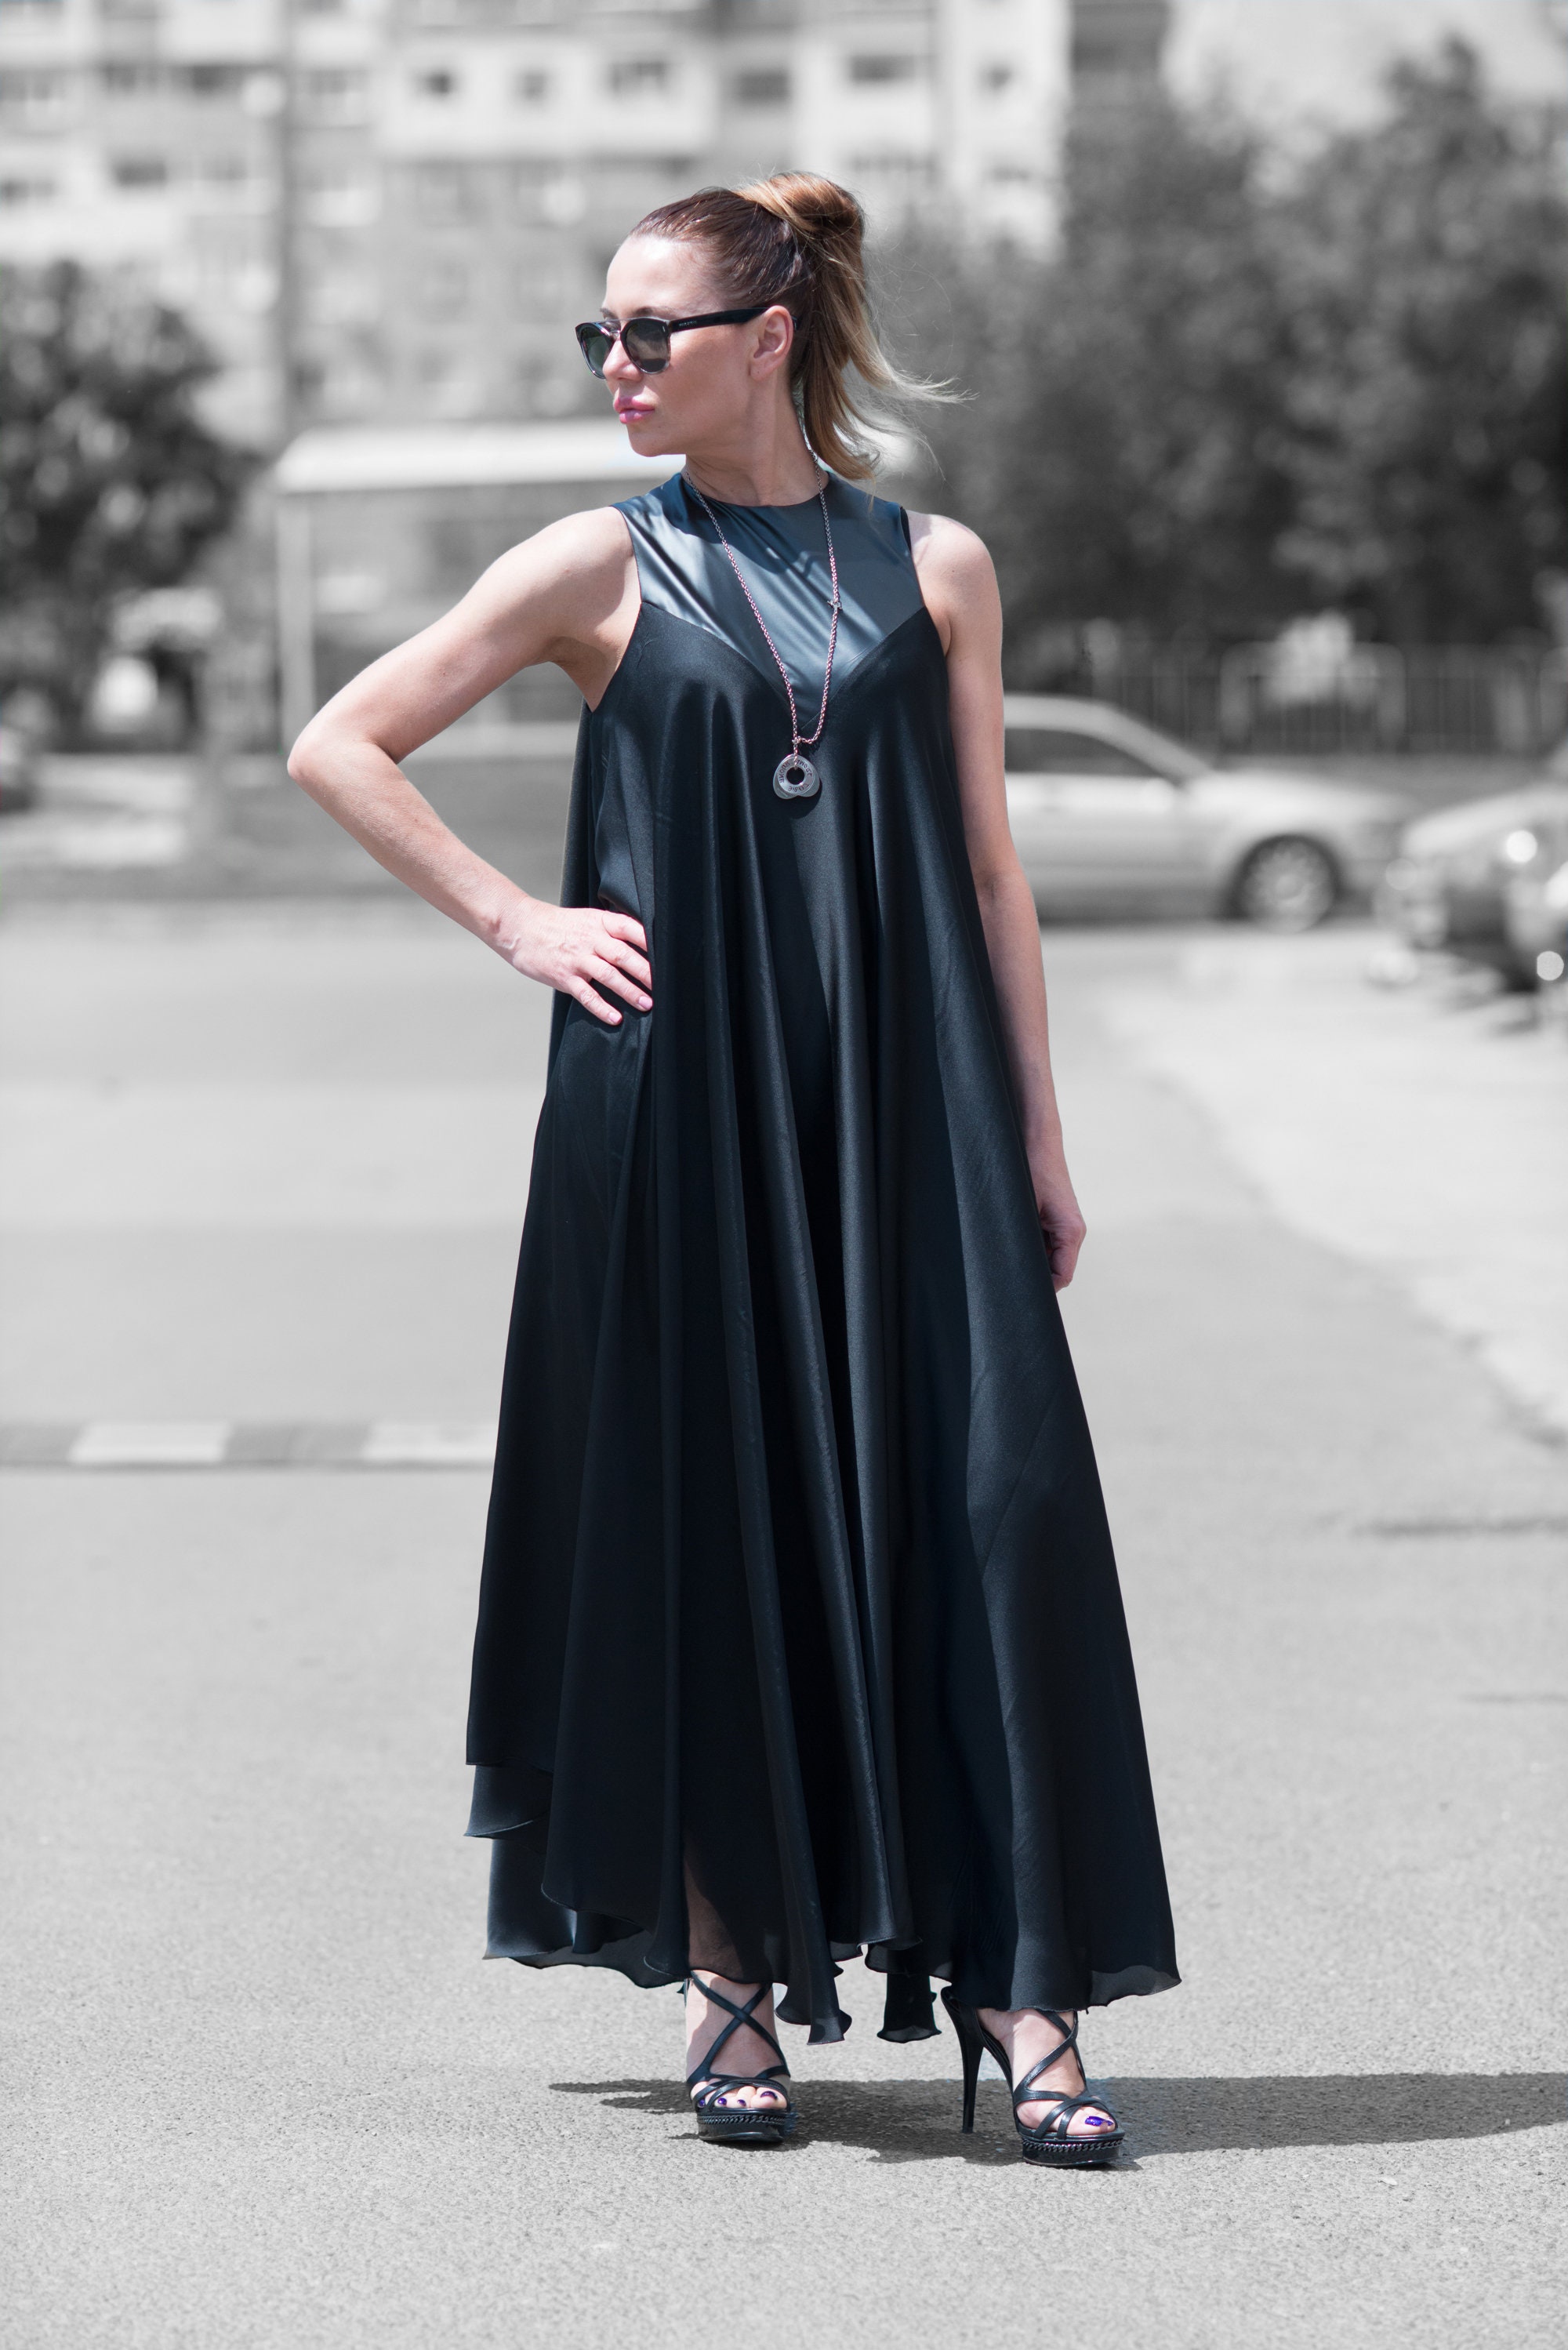 Black Satin Dress Plus Size Clothing Fall Dress Black Maxi - Etsy